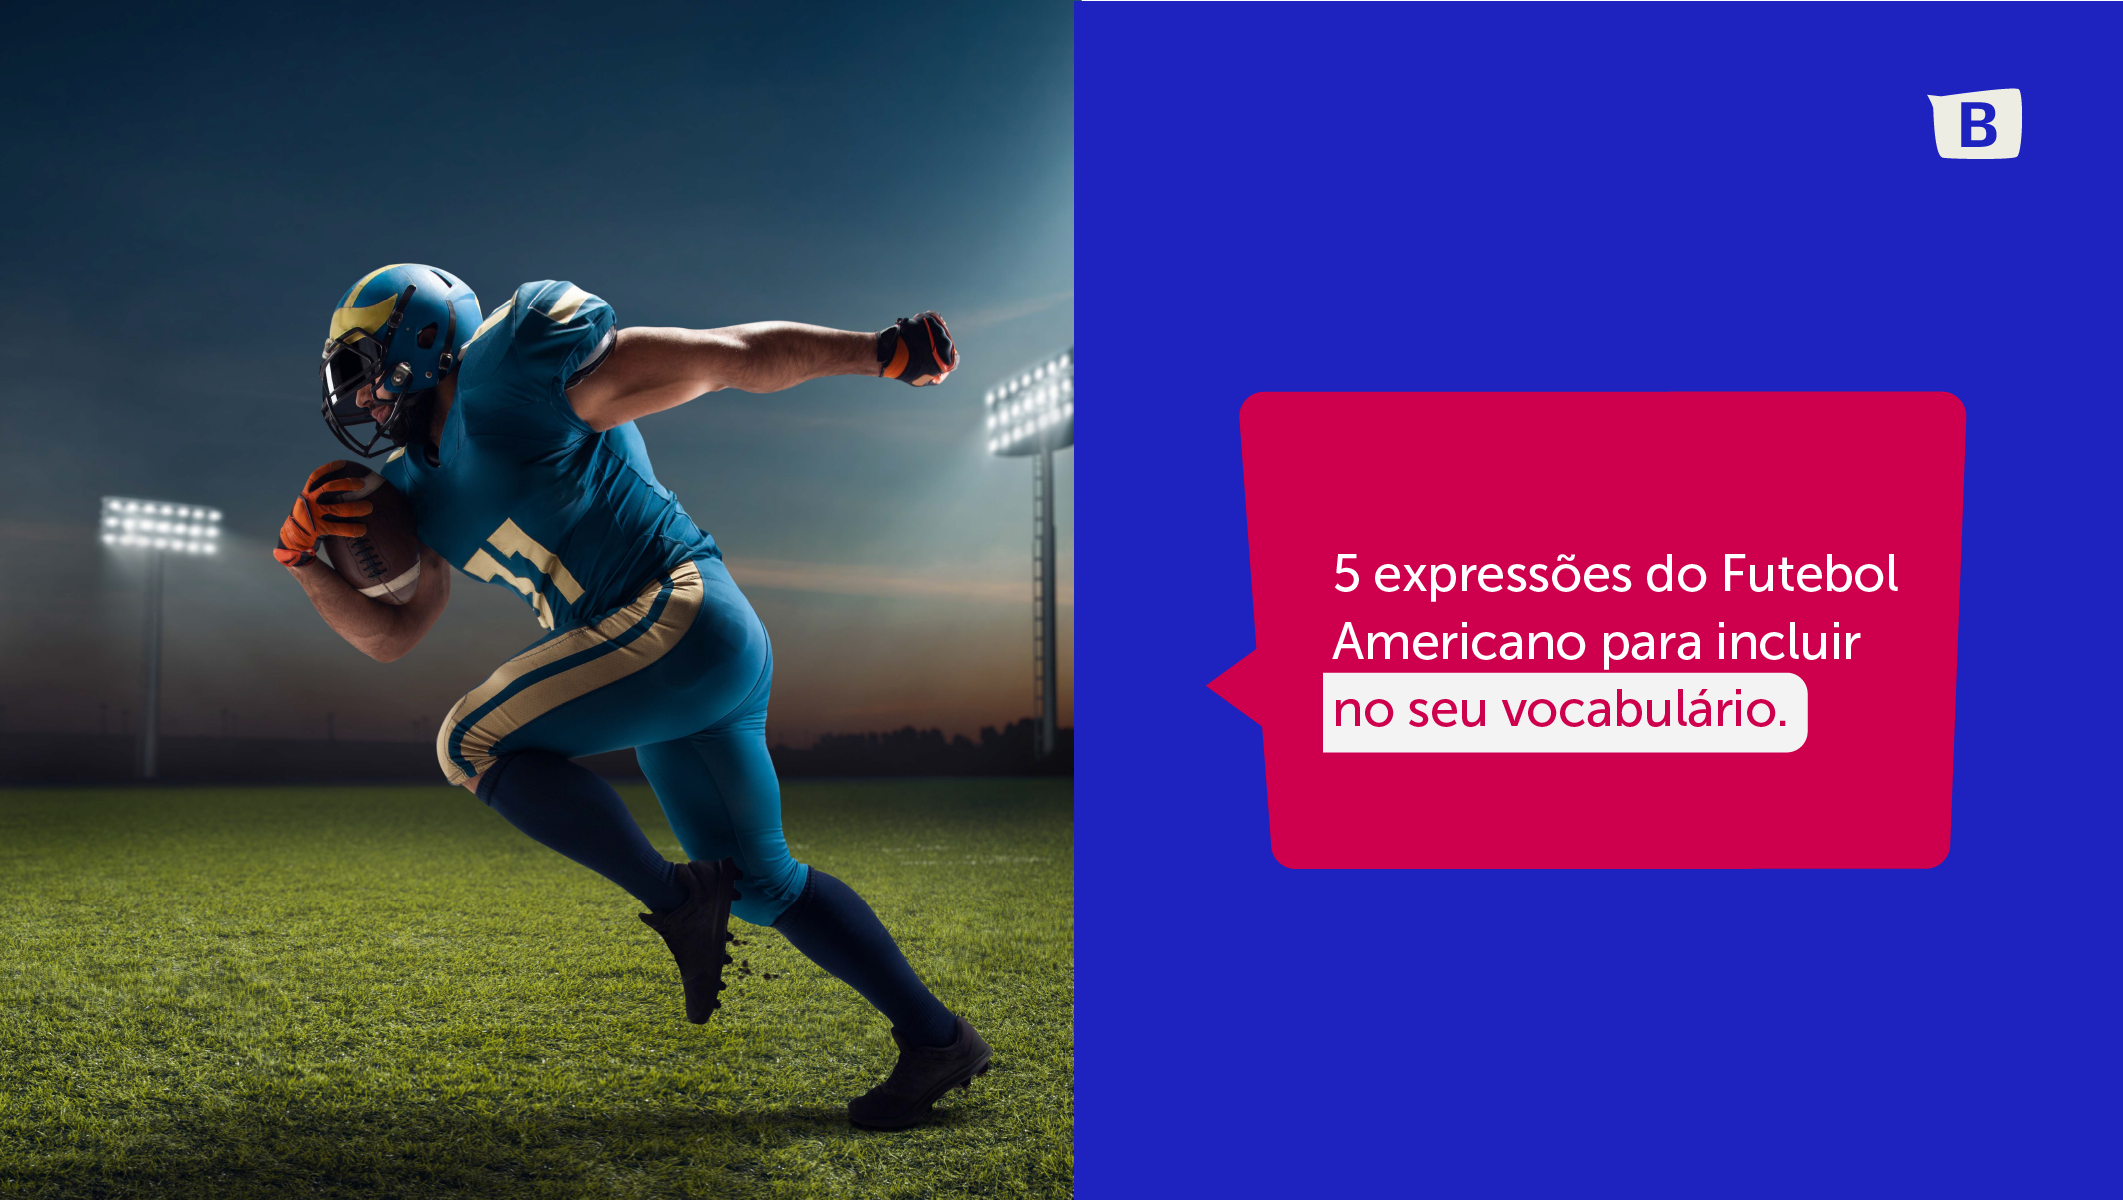 Expanda o seu vocabulário com expressões do esporte mais assistido dos EUA. 1